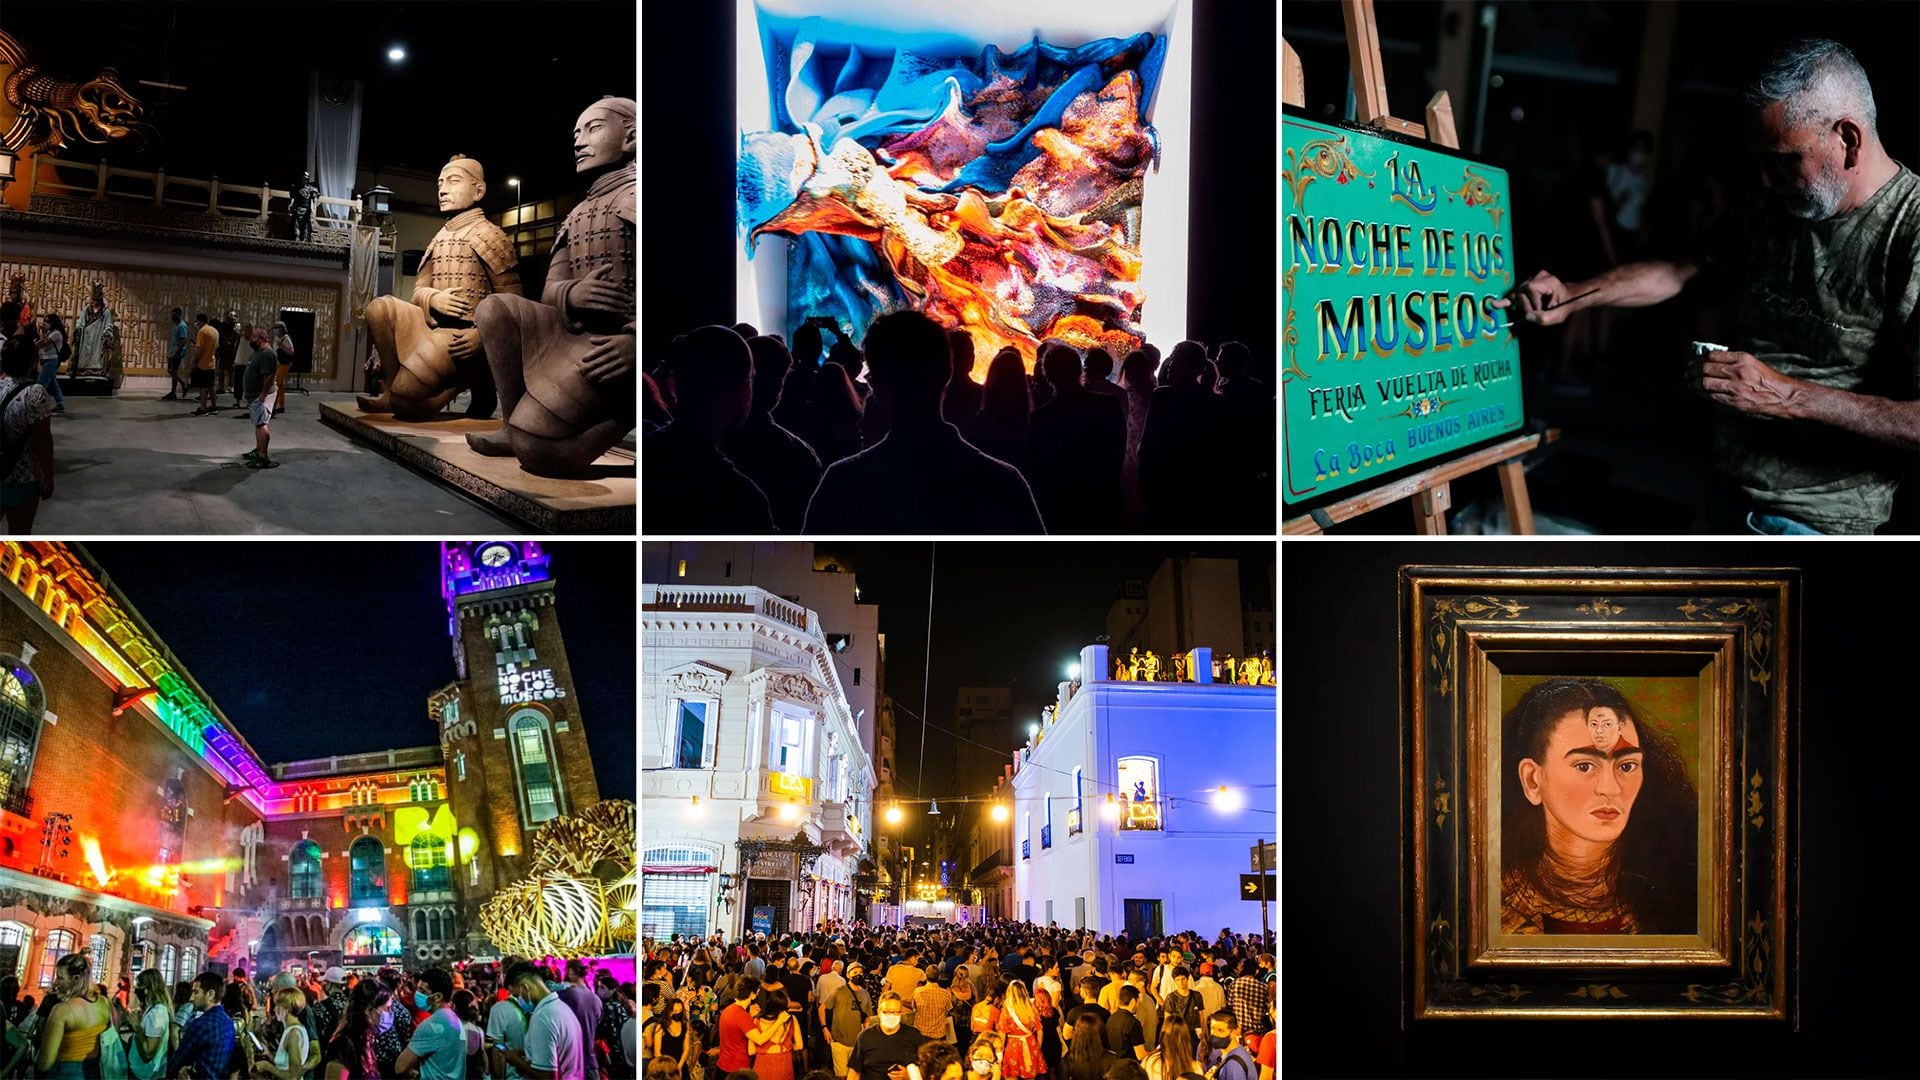 Nueva edición de “La Noche de los Museos” en Buenos Aires: guía completa de actividades